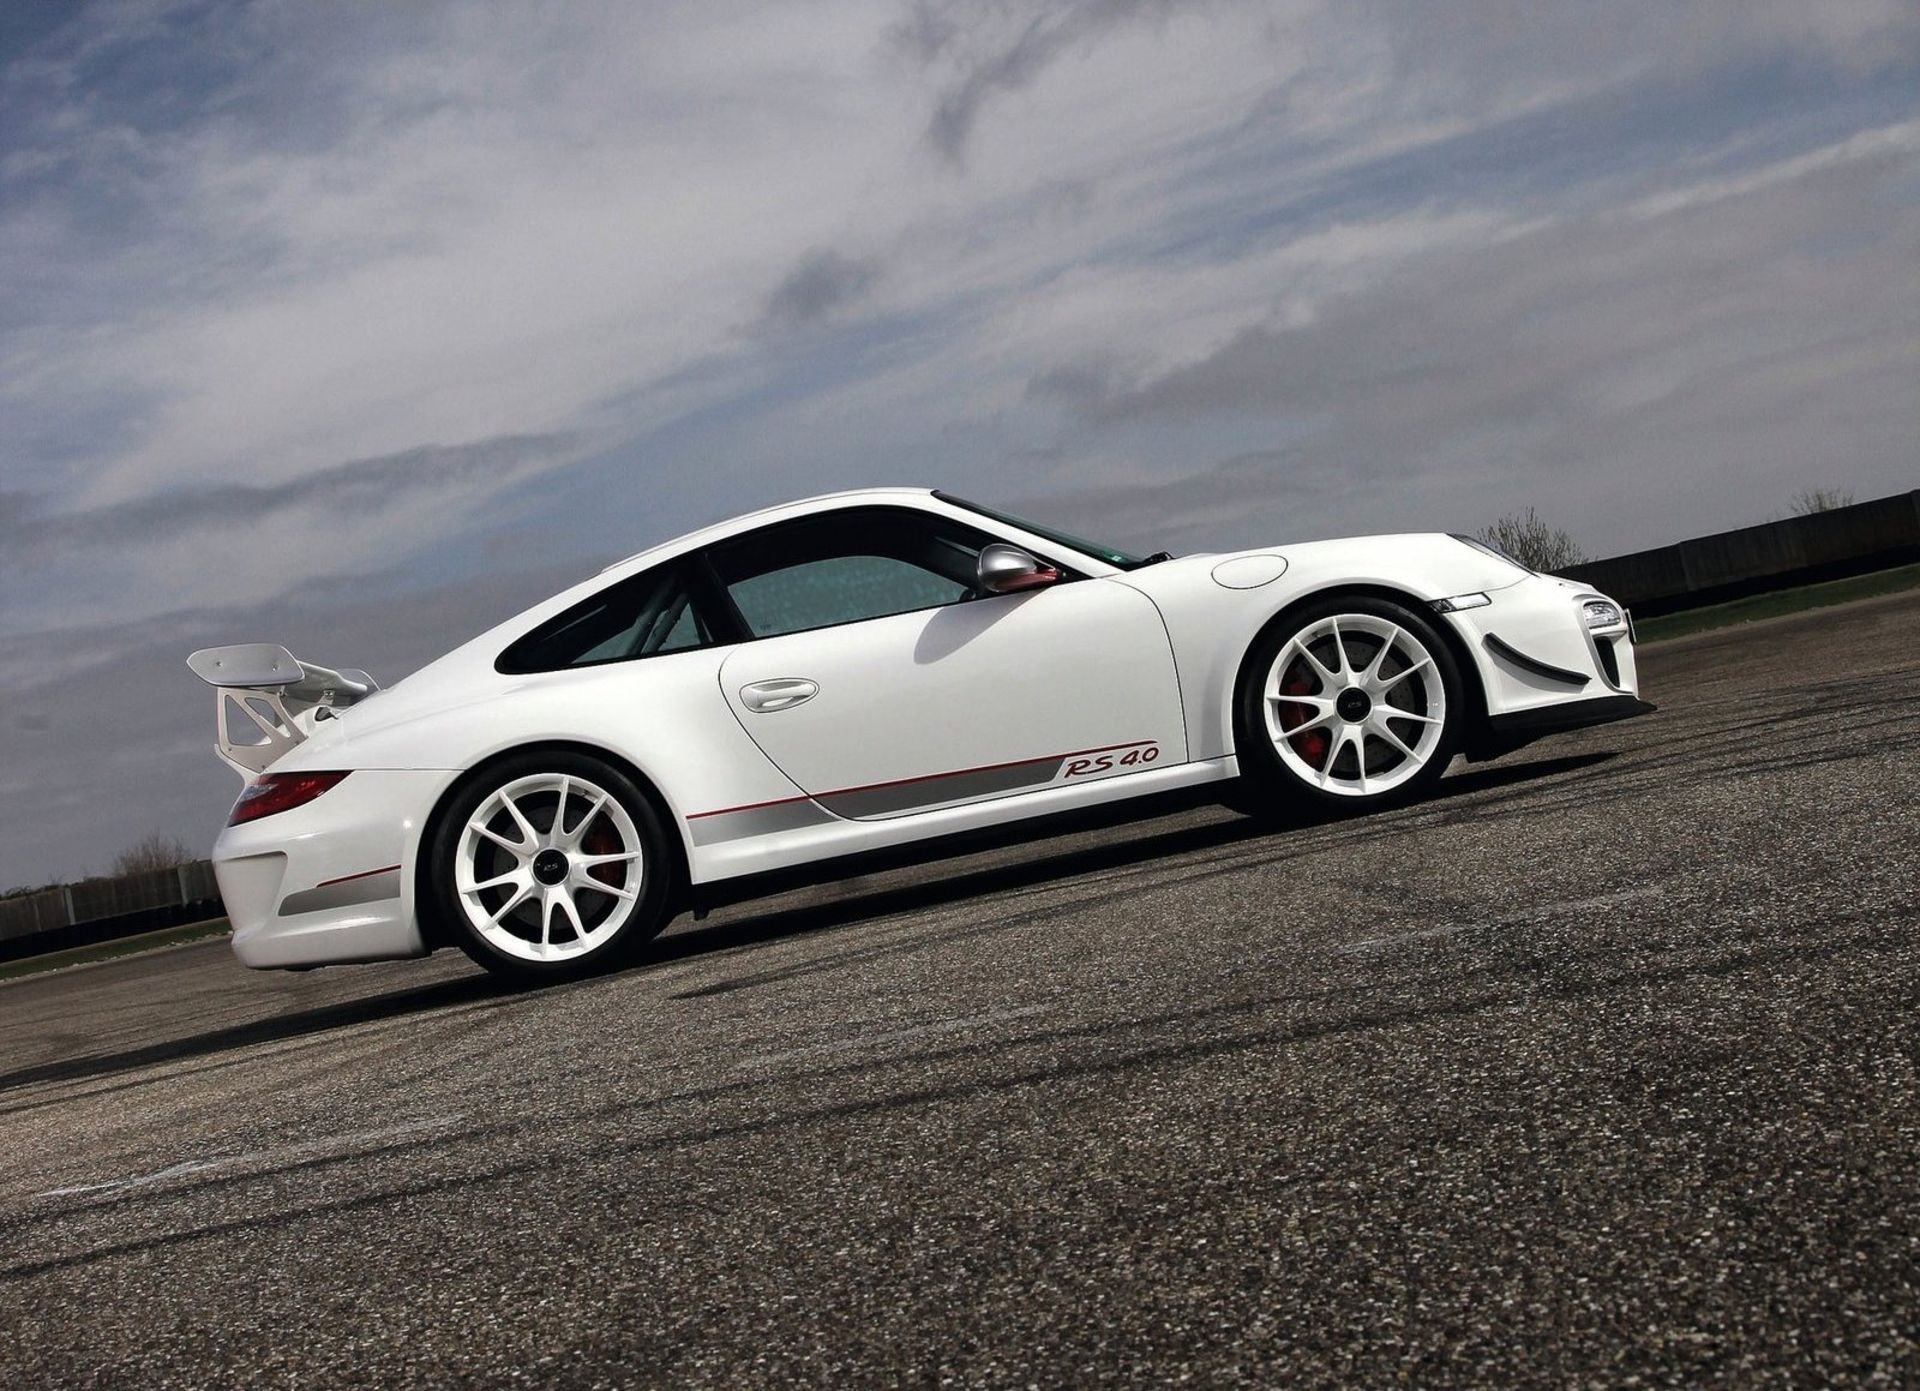 پورشه 911 GT3 RS در رالی